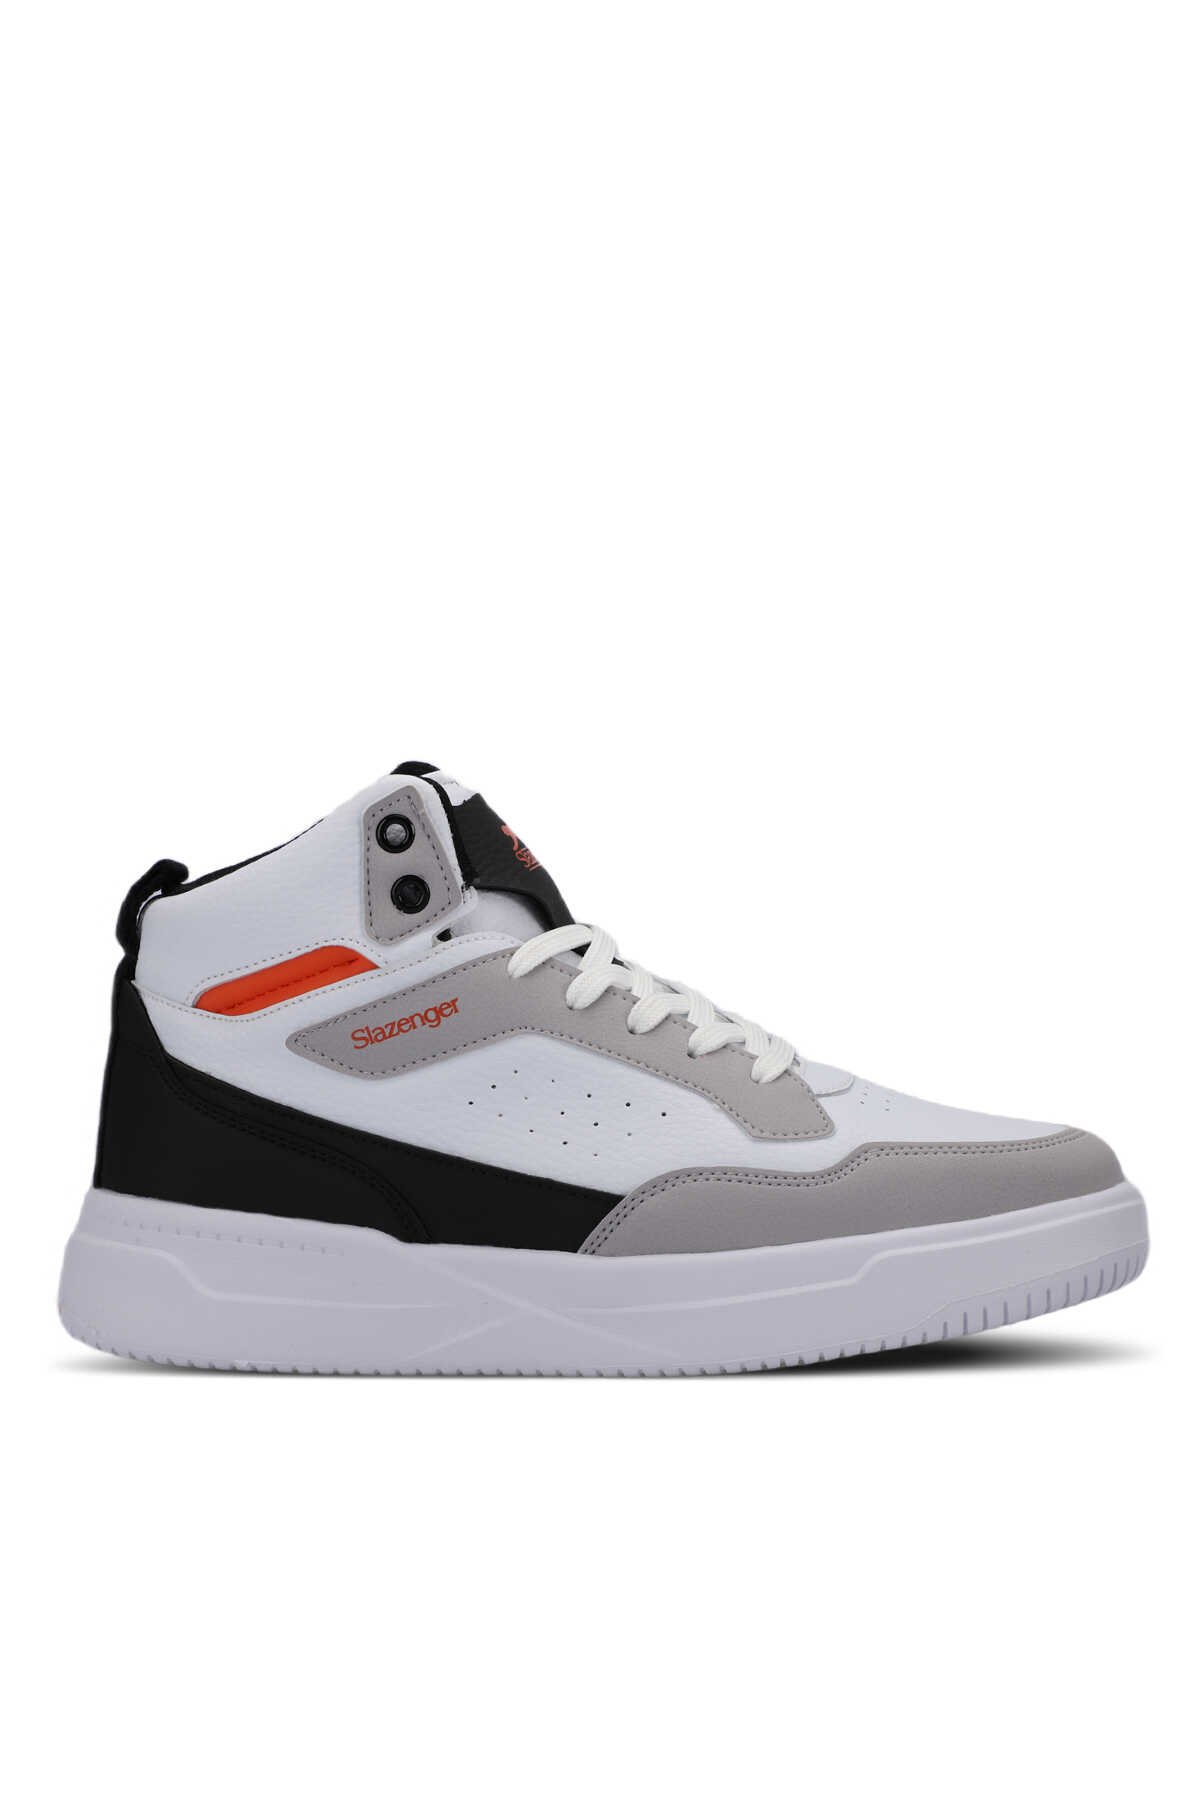 Slazenger - Slazenger LALI Sneaker Erkek Ayakkabı Beyaz / Siyah